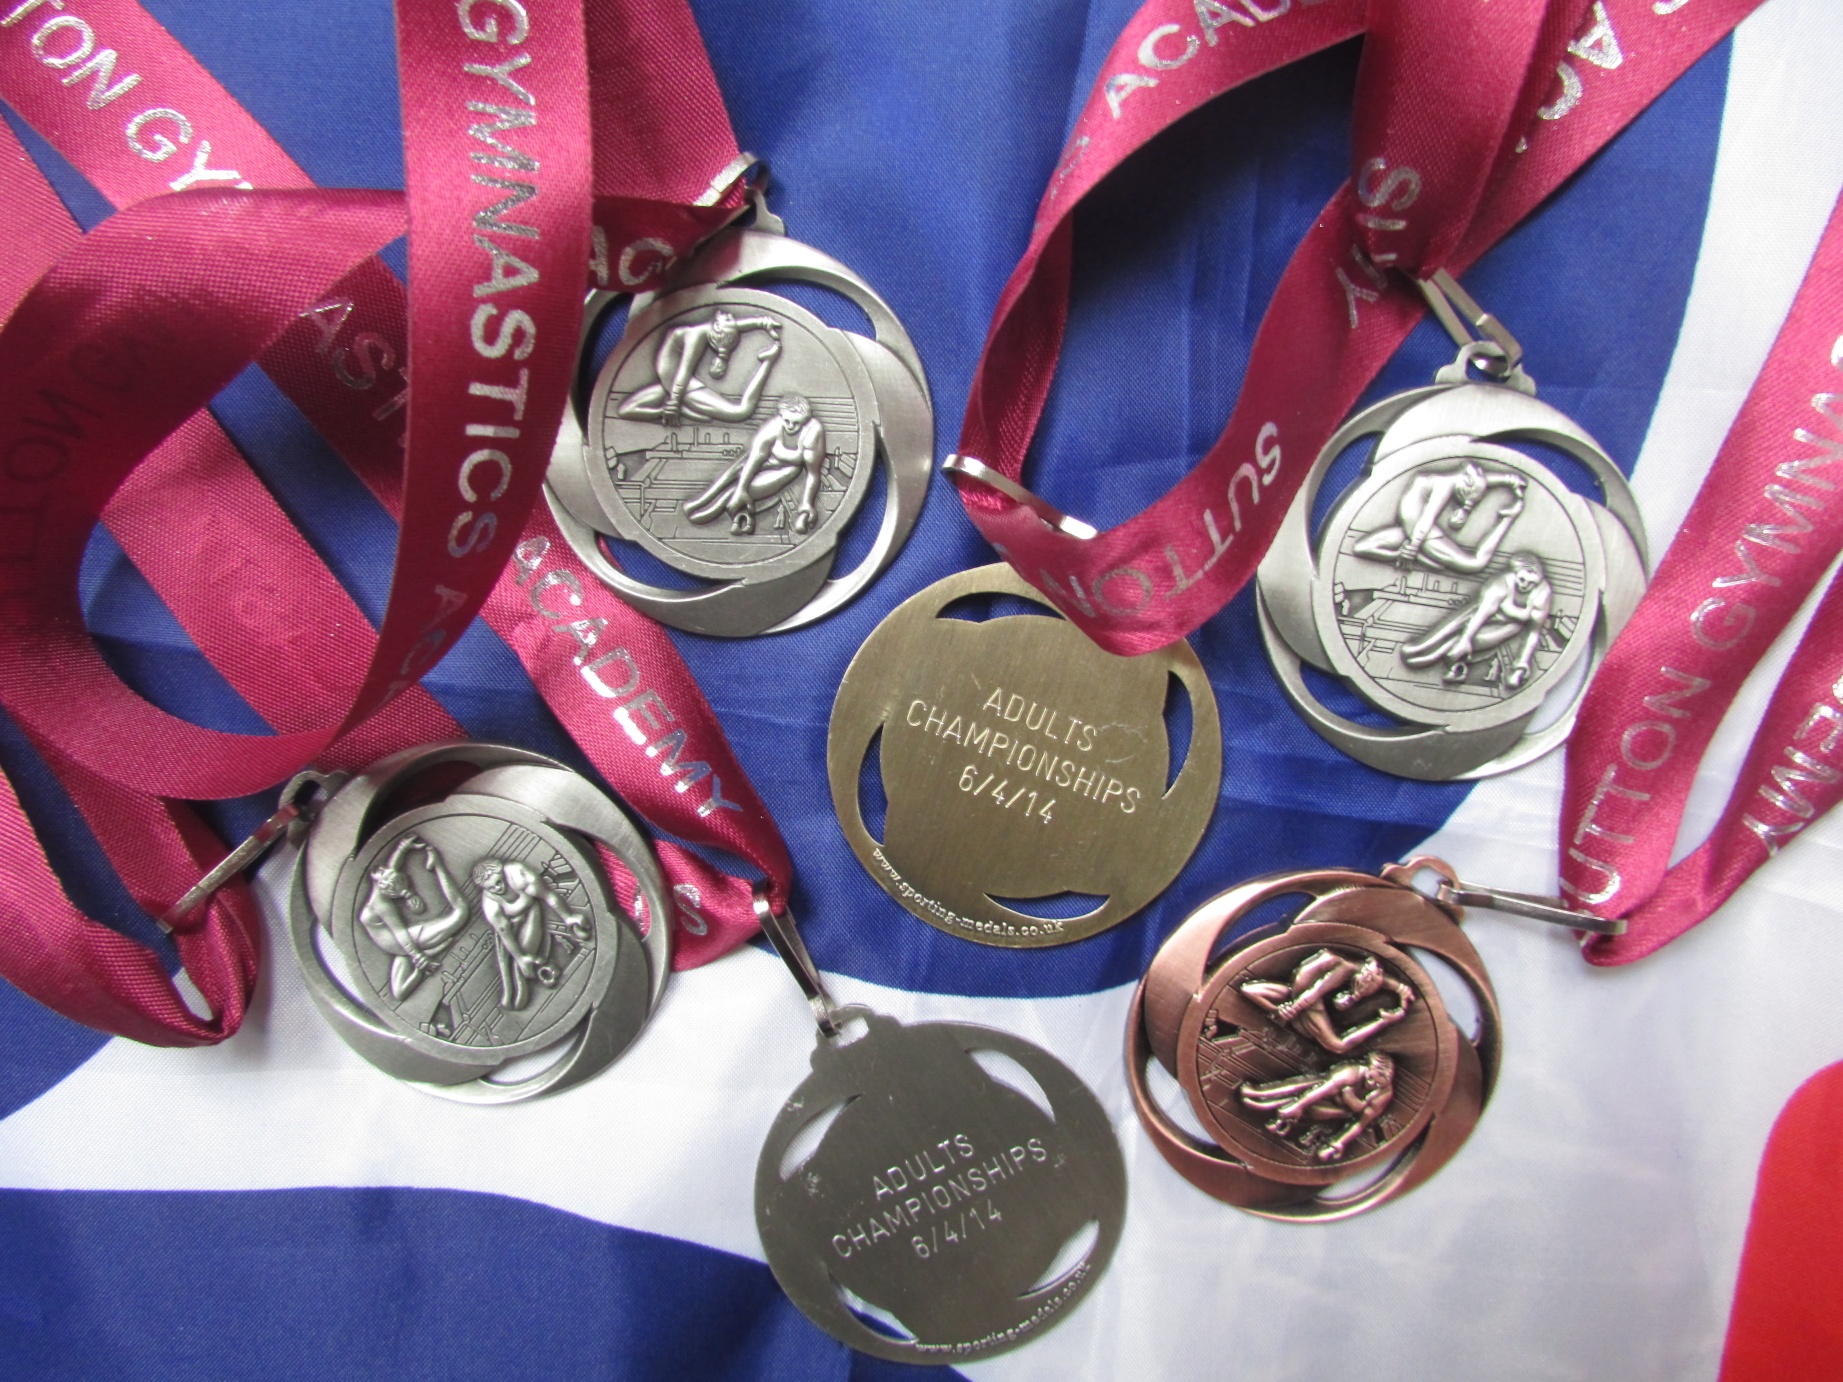 STK Sport - 6 medals at the 2014 Sutton Gymnastics Academy